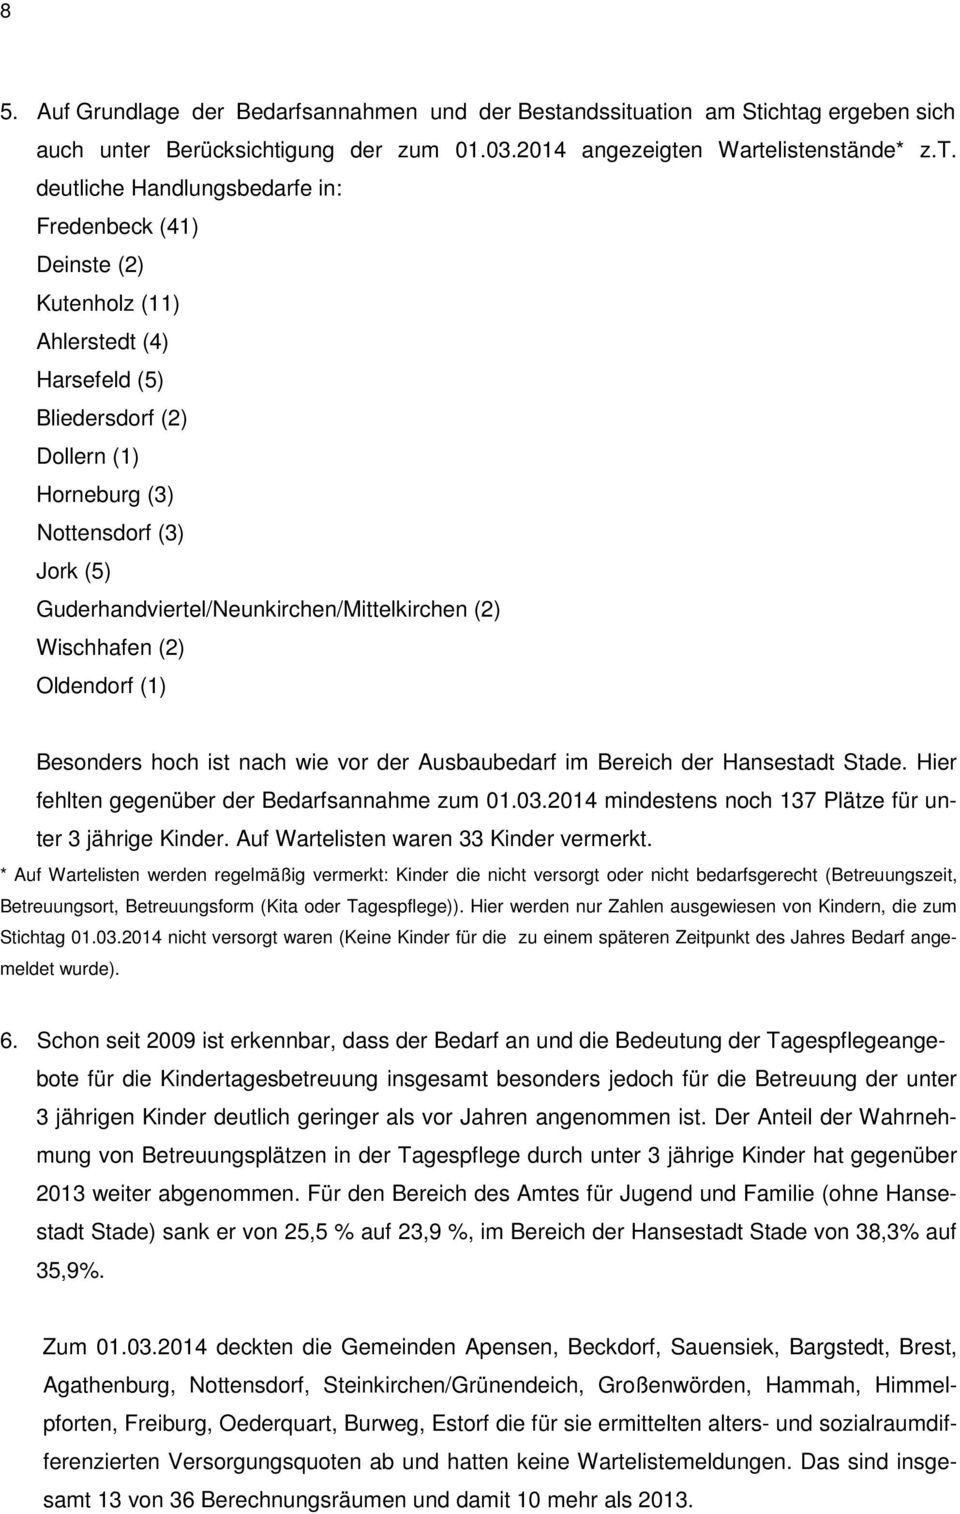 ation am Stichtag ergeben sich auch unter Berücksichtigung der zum 01.03.2014 angezeigten Wartelistenstände* z.t. deutliche Handlungsbedarfe in: Fredenbeck (41) Deinste (2) Kutenholz (11) Ahlerstedt